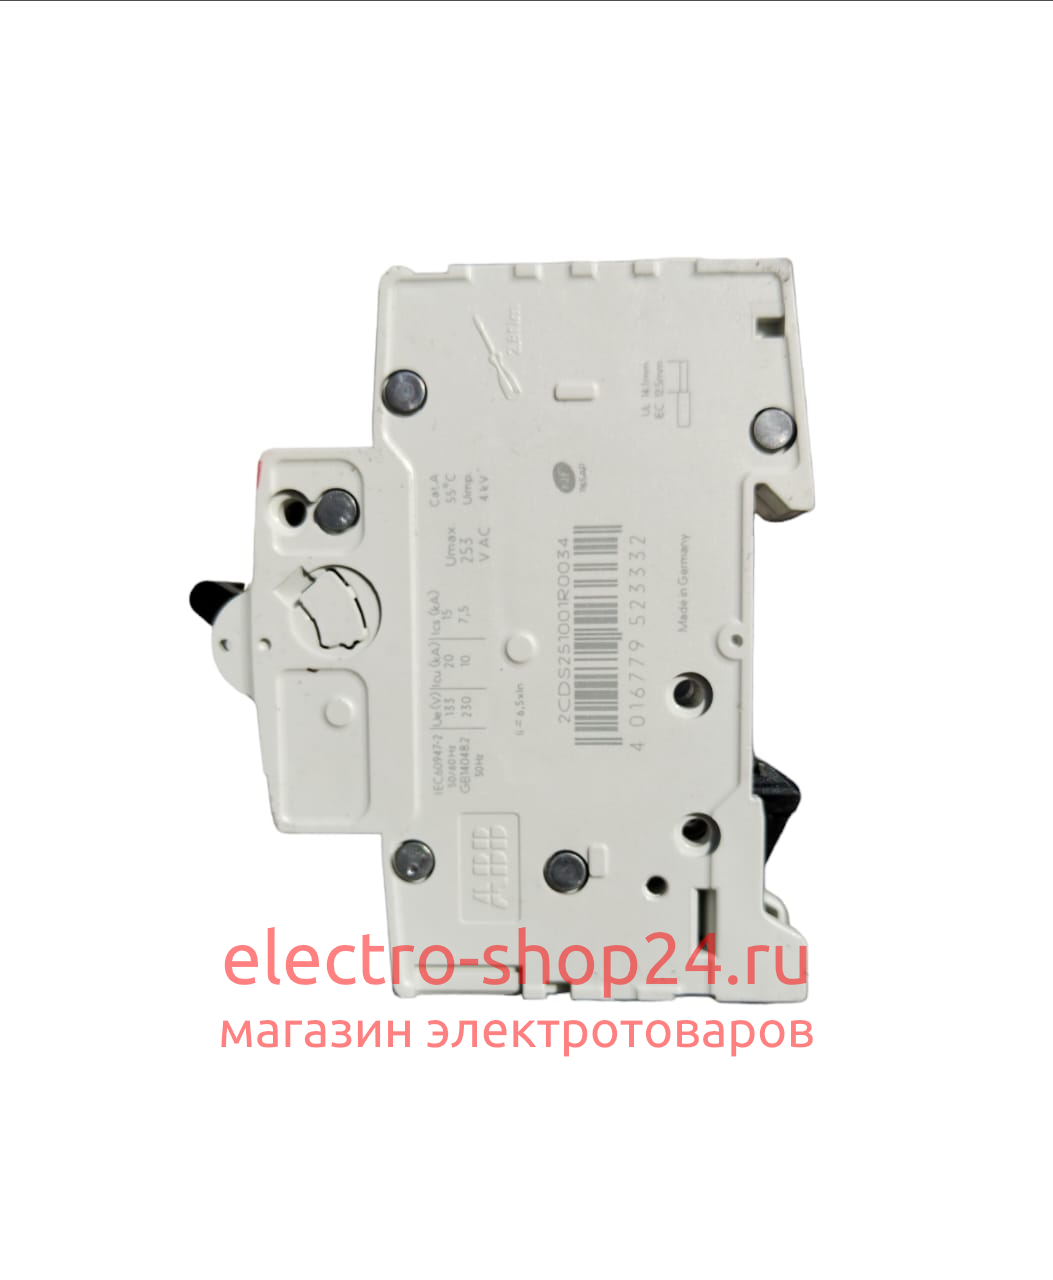 S201 C40 Автоматический выключатель 1-полюсный 40А 6кА (хар-ка C) ABB 2CDS251001R0404 2CDS251001R0404 - магазин электротехники Electroshop